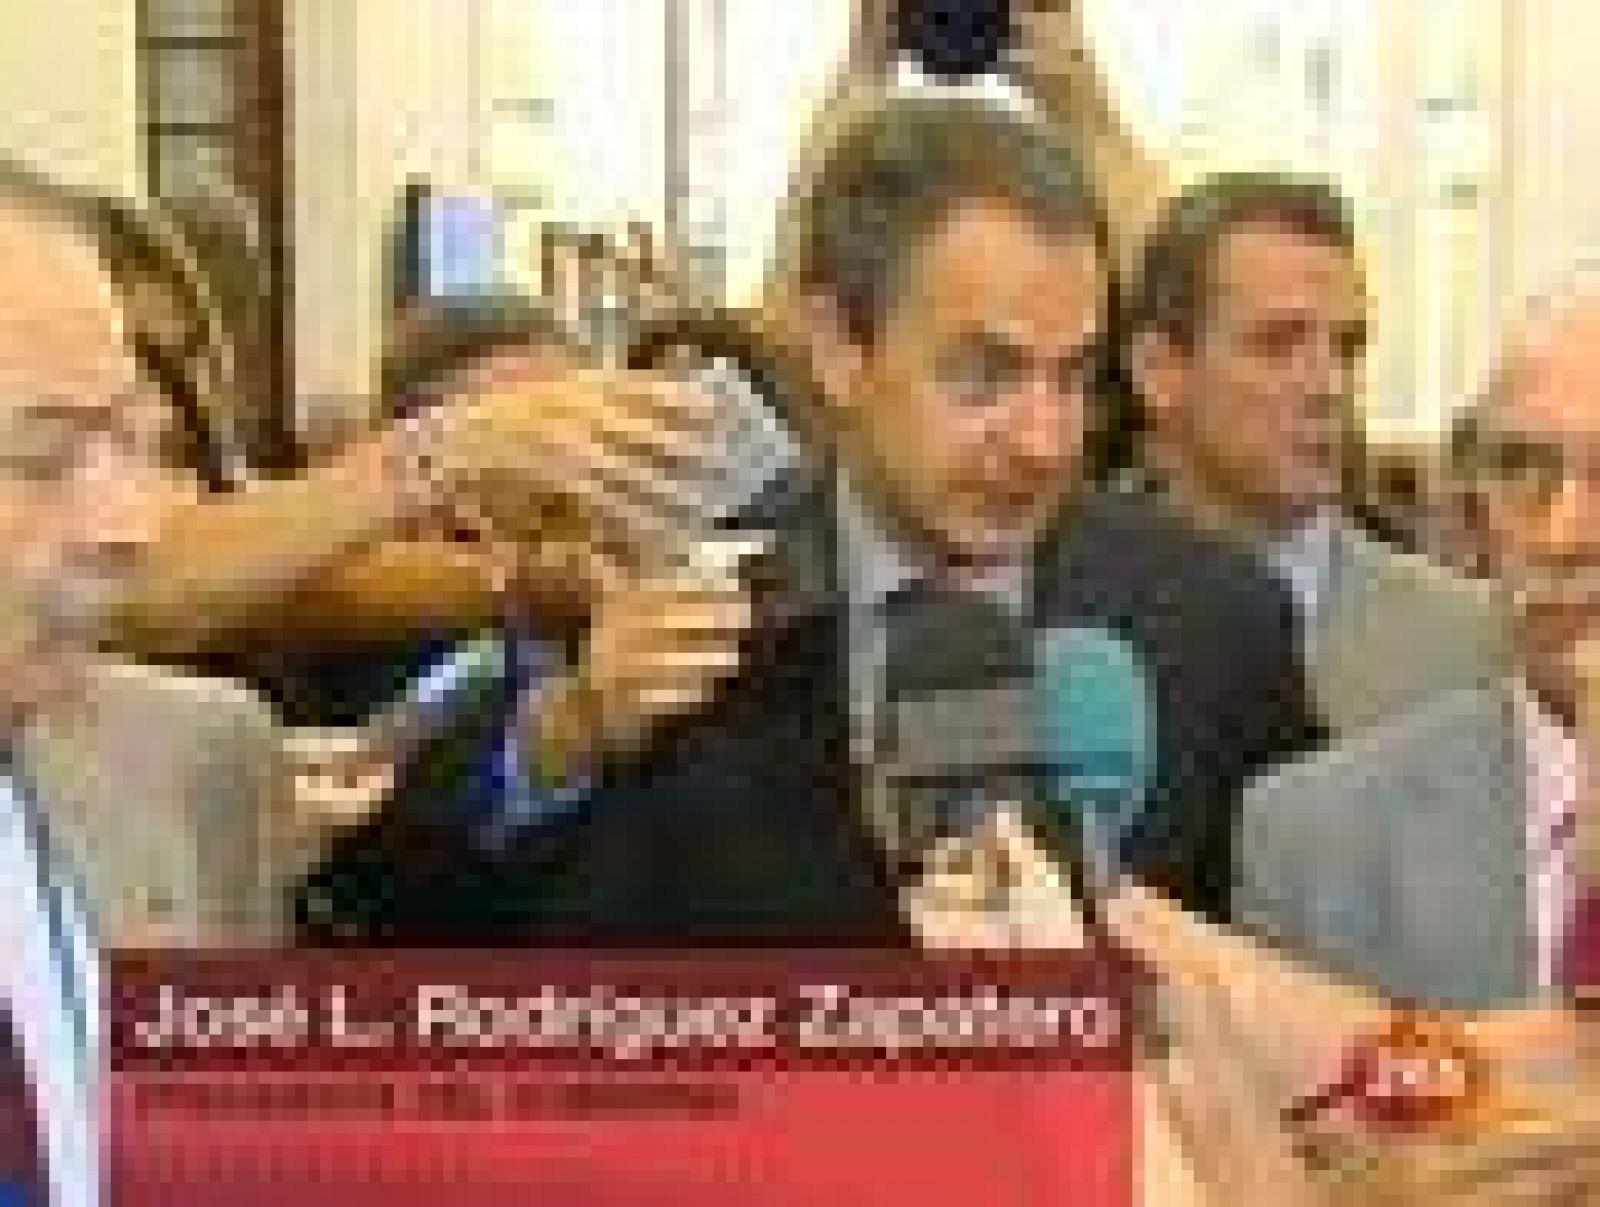 El presidente del Gobierno, JosEl presidente del Gobierno, José Luis Rodríguez Zapatero, se ha mostrado este jueves convencido de que el Gobierno sigue contando con el respaldo parlamentario "suficiente" para sacar adelante sus iniciativas.

